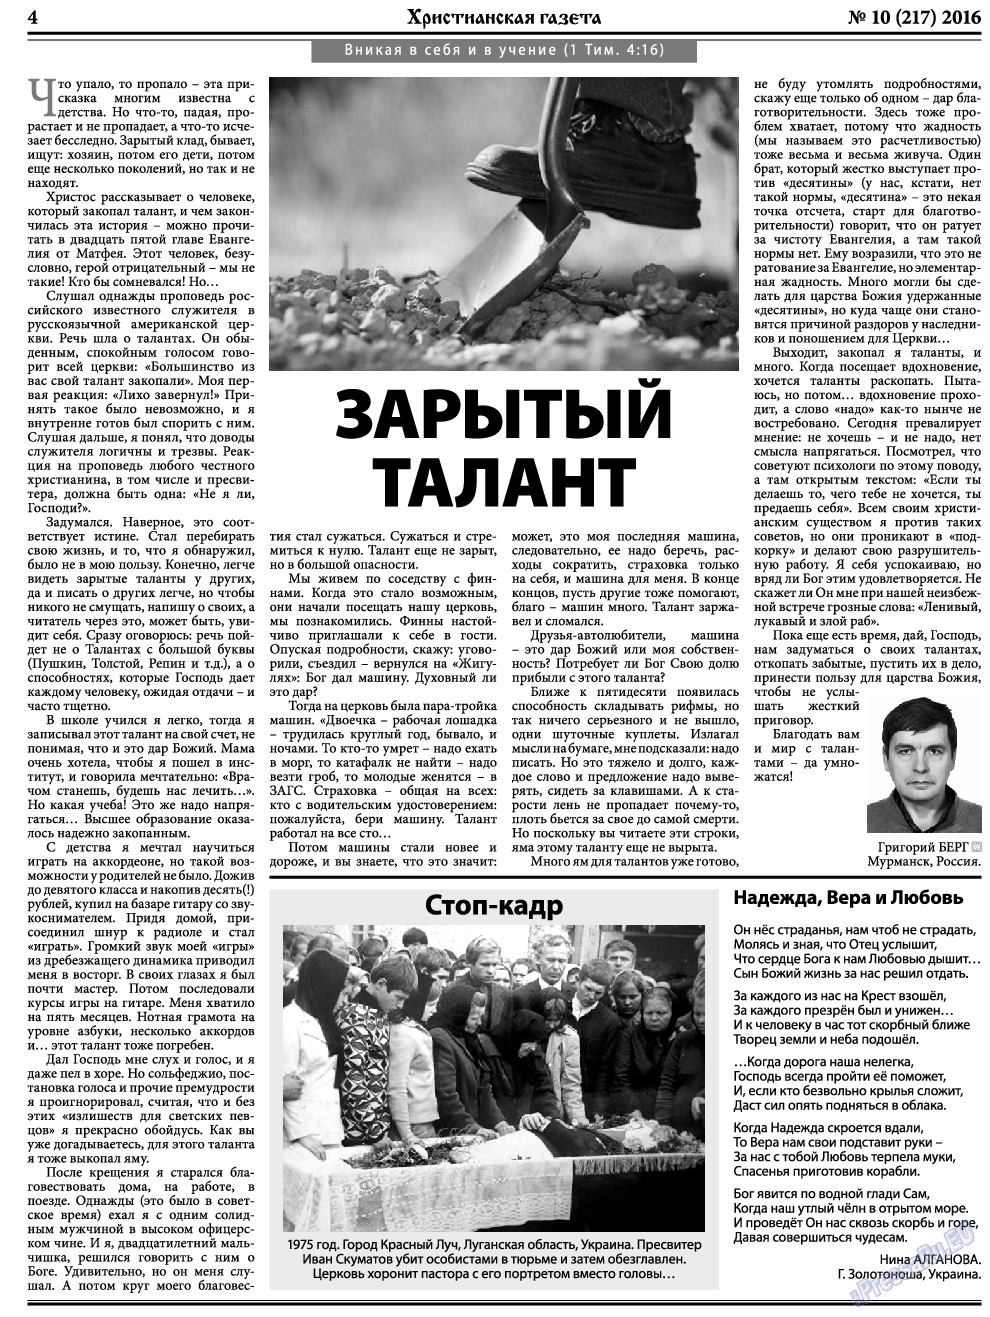 Христианская газета, газета. 2016 №10 стр.4